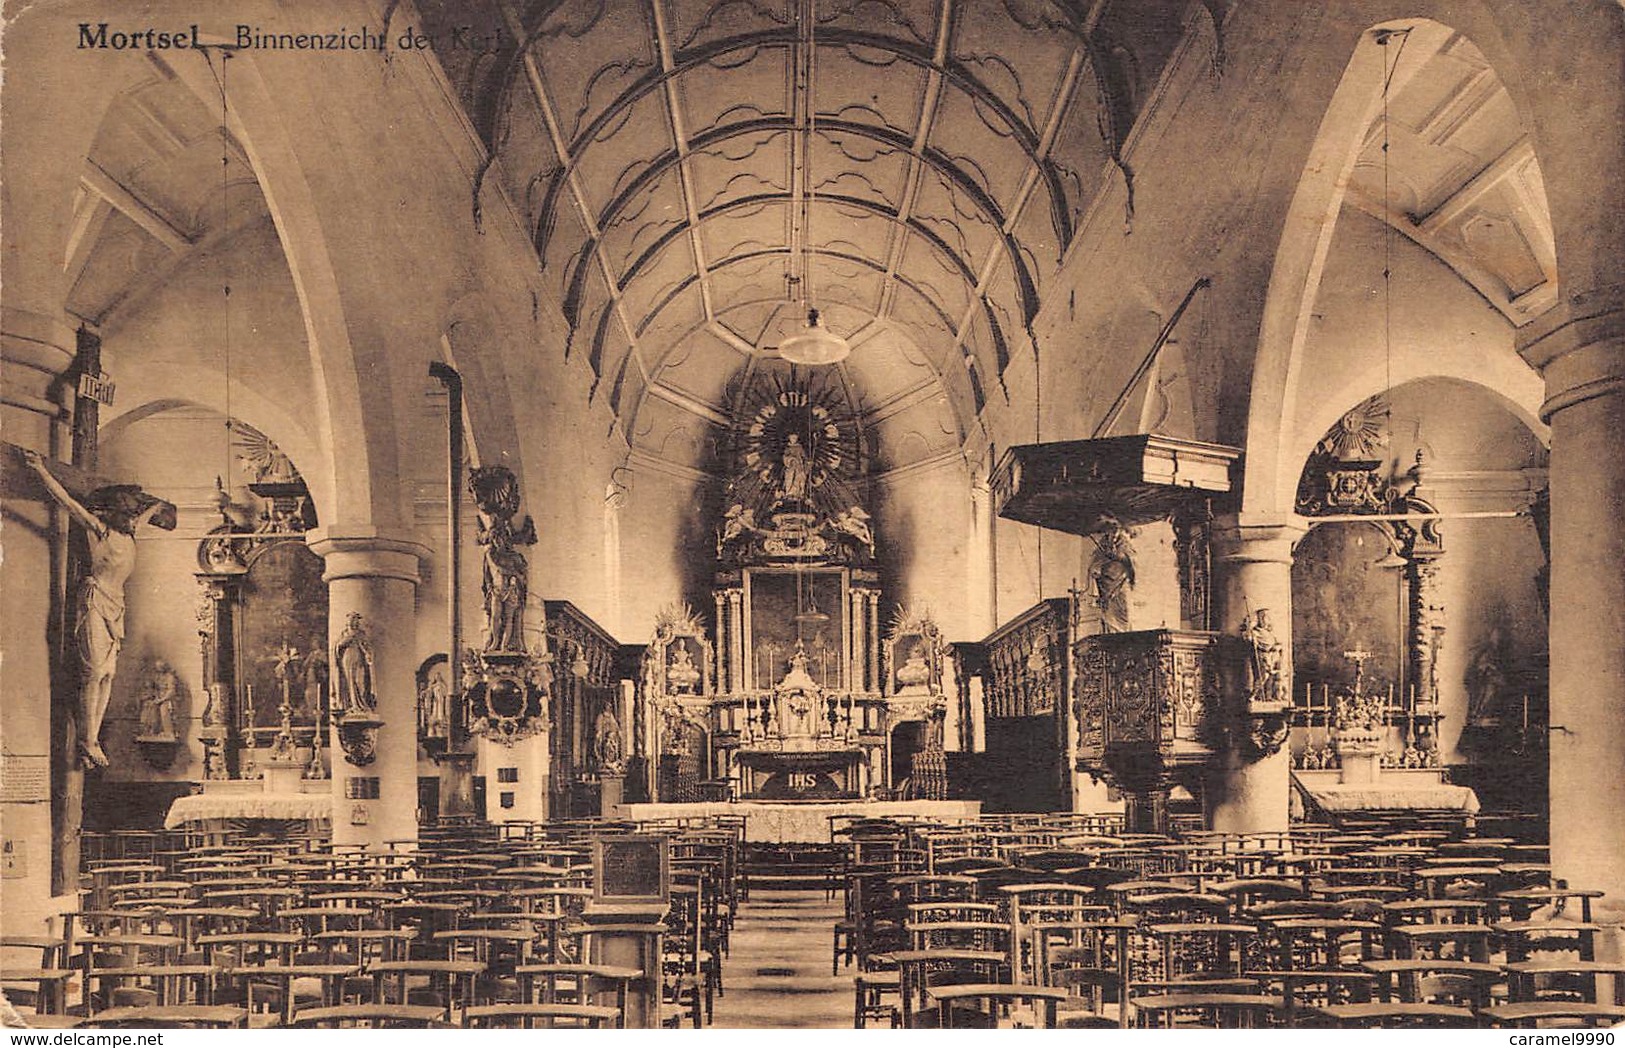 Mortsel Binnenzicht In De Kerk Eglise     M 1574 - Mortsel